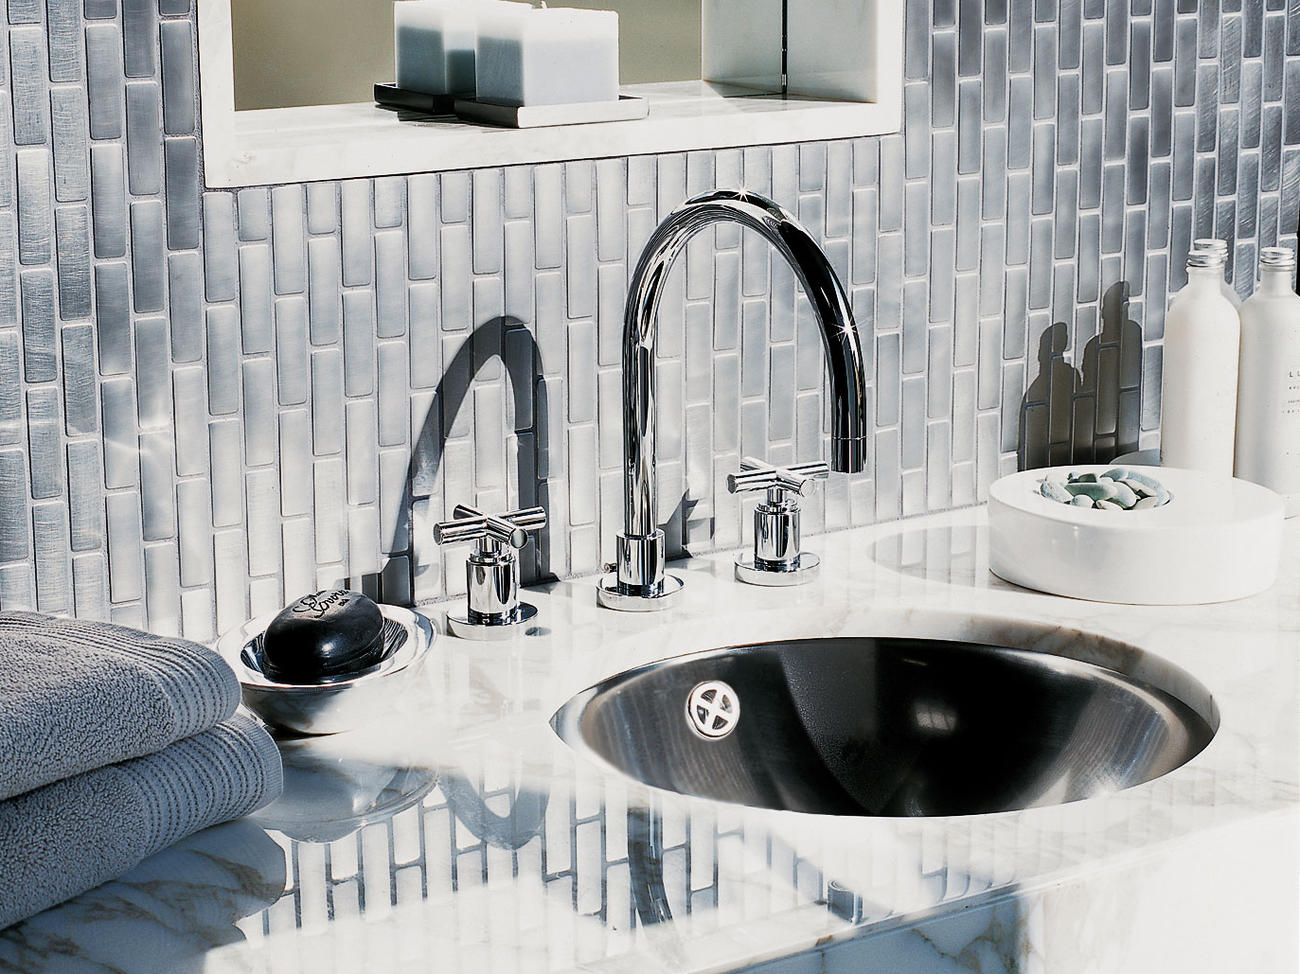 Tiled backsplash for your bathroom counter